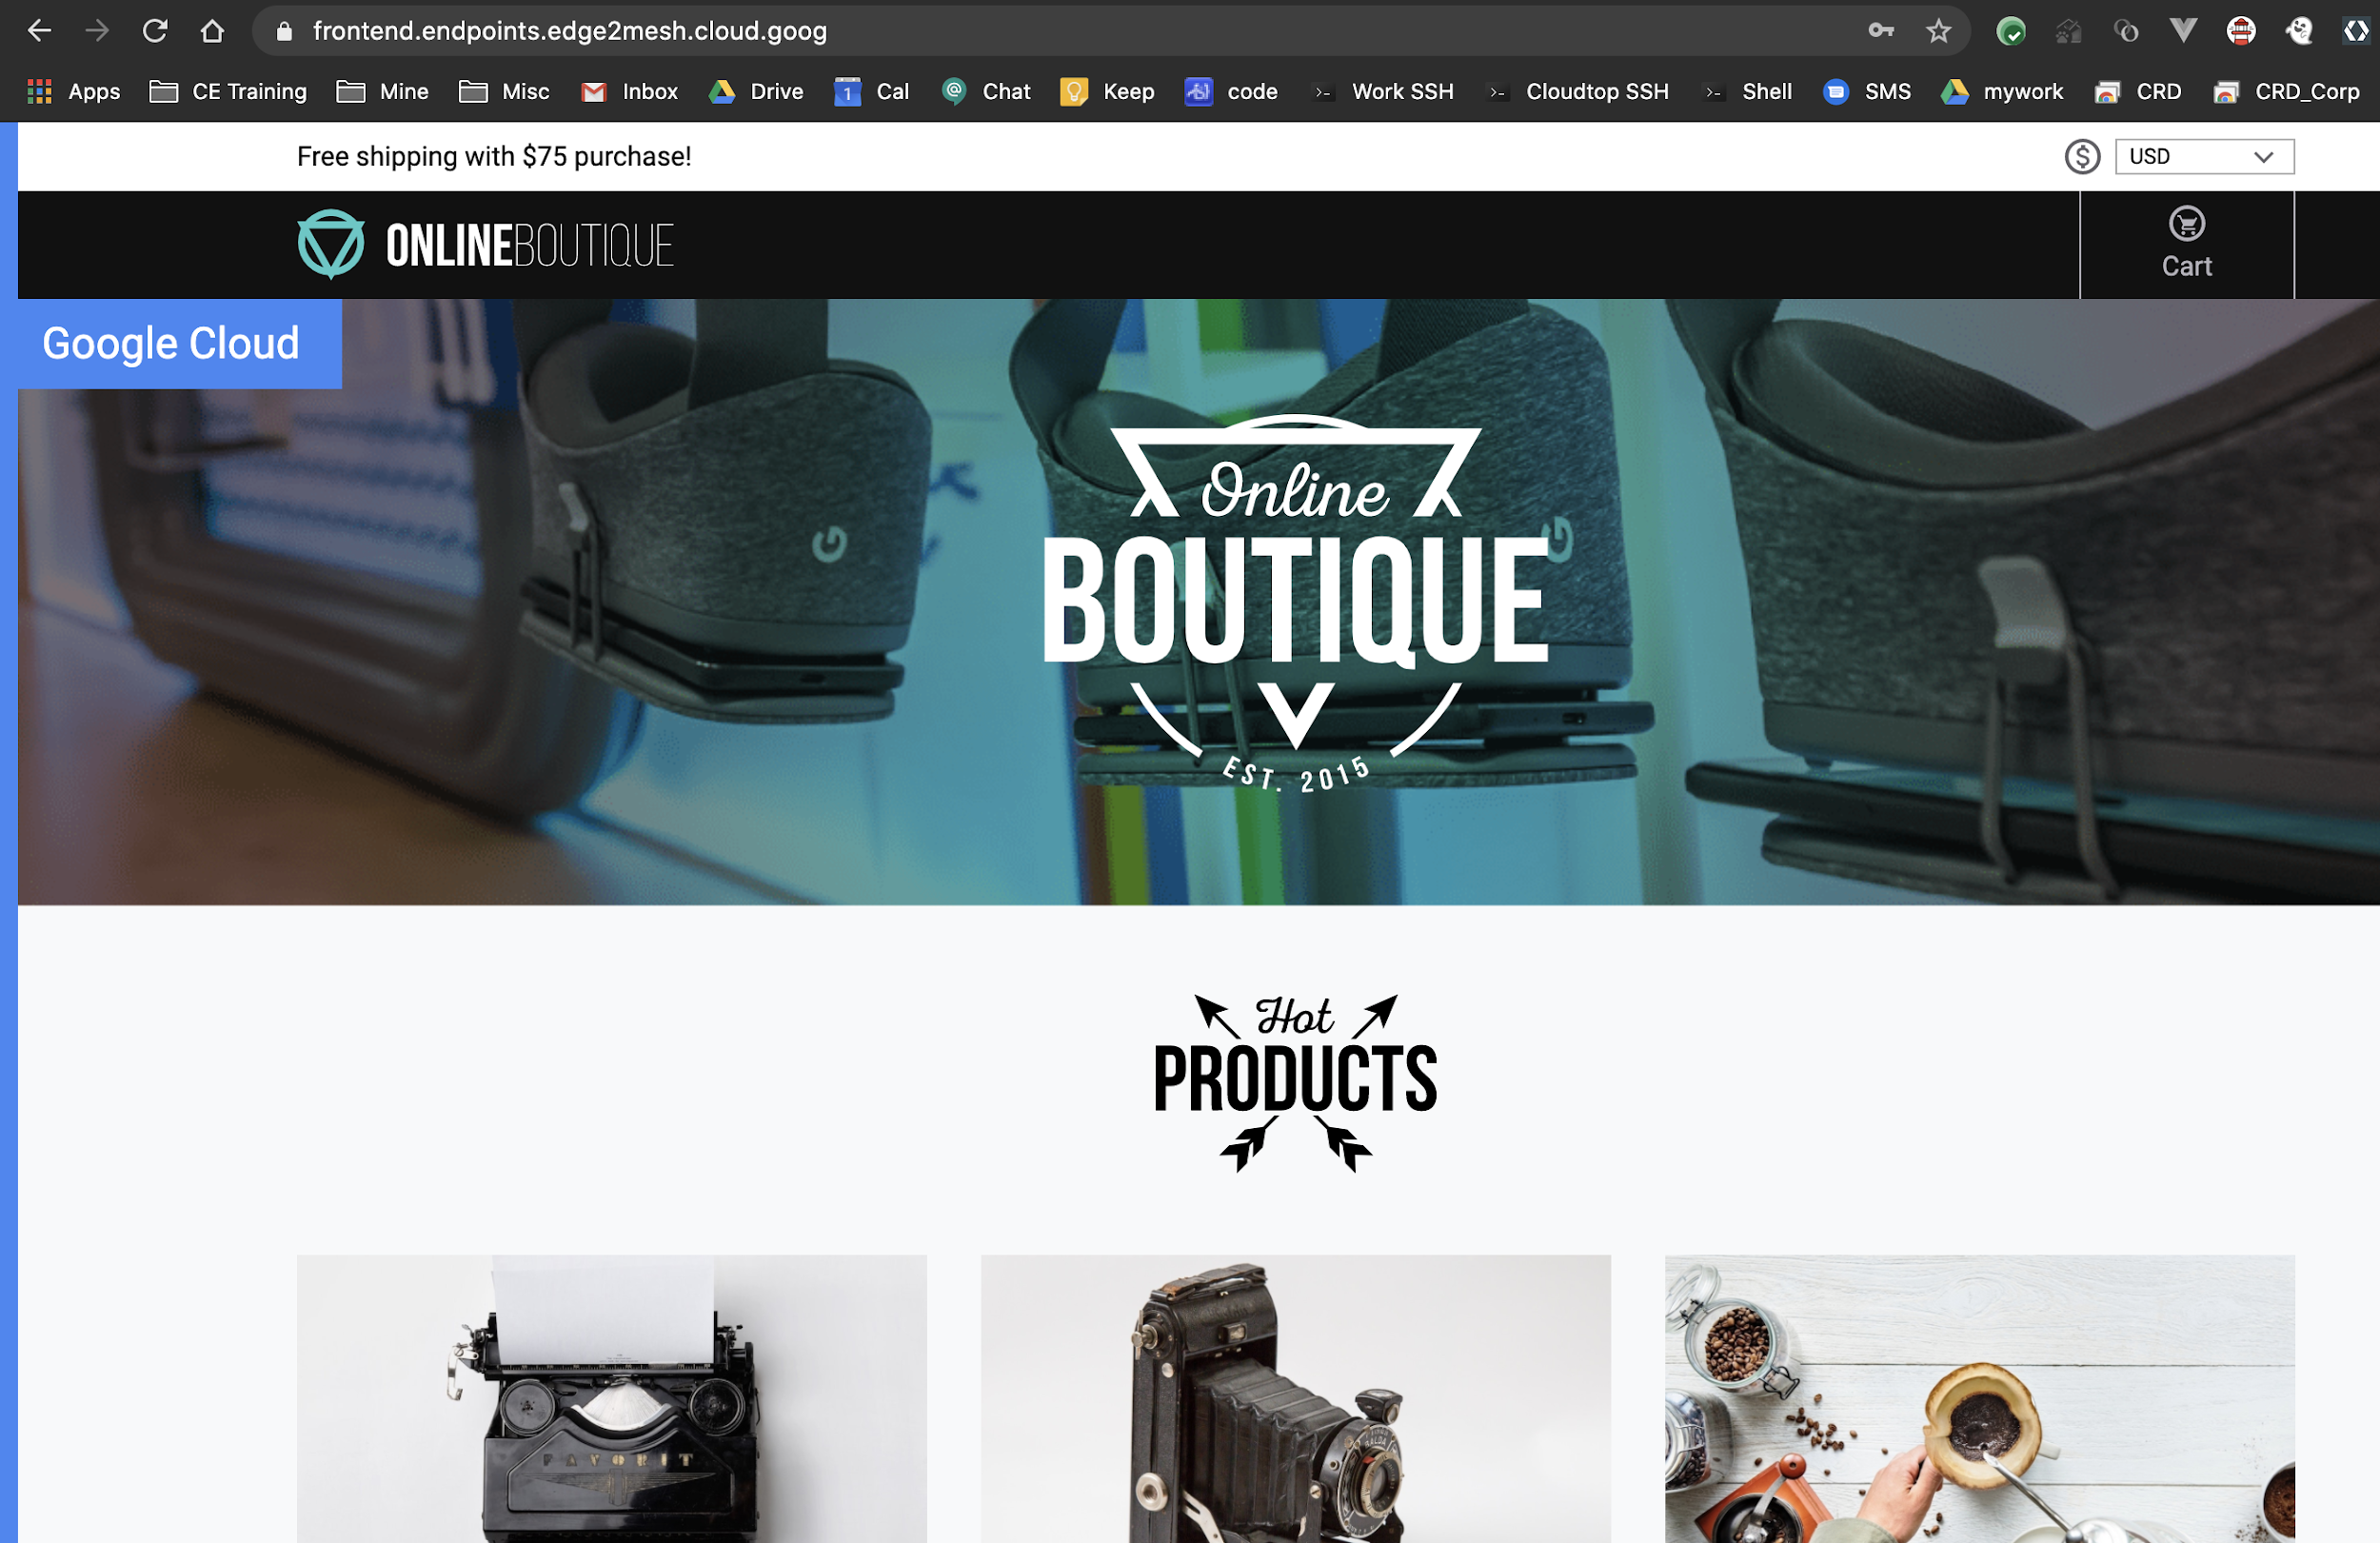 Prodotti mostrati sulla home page di Boutique online.